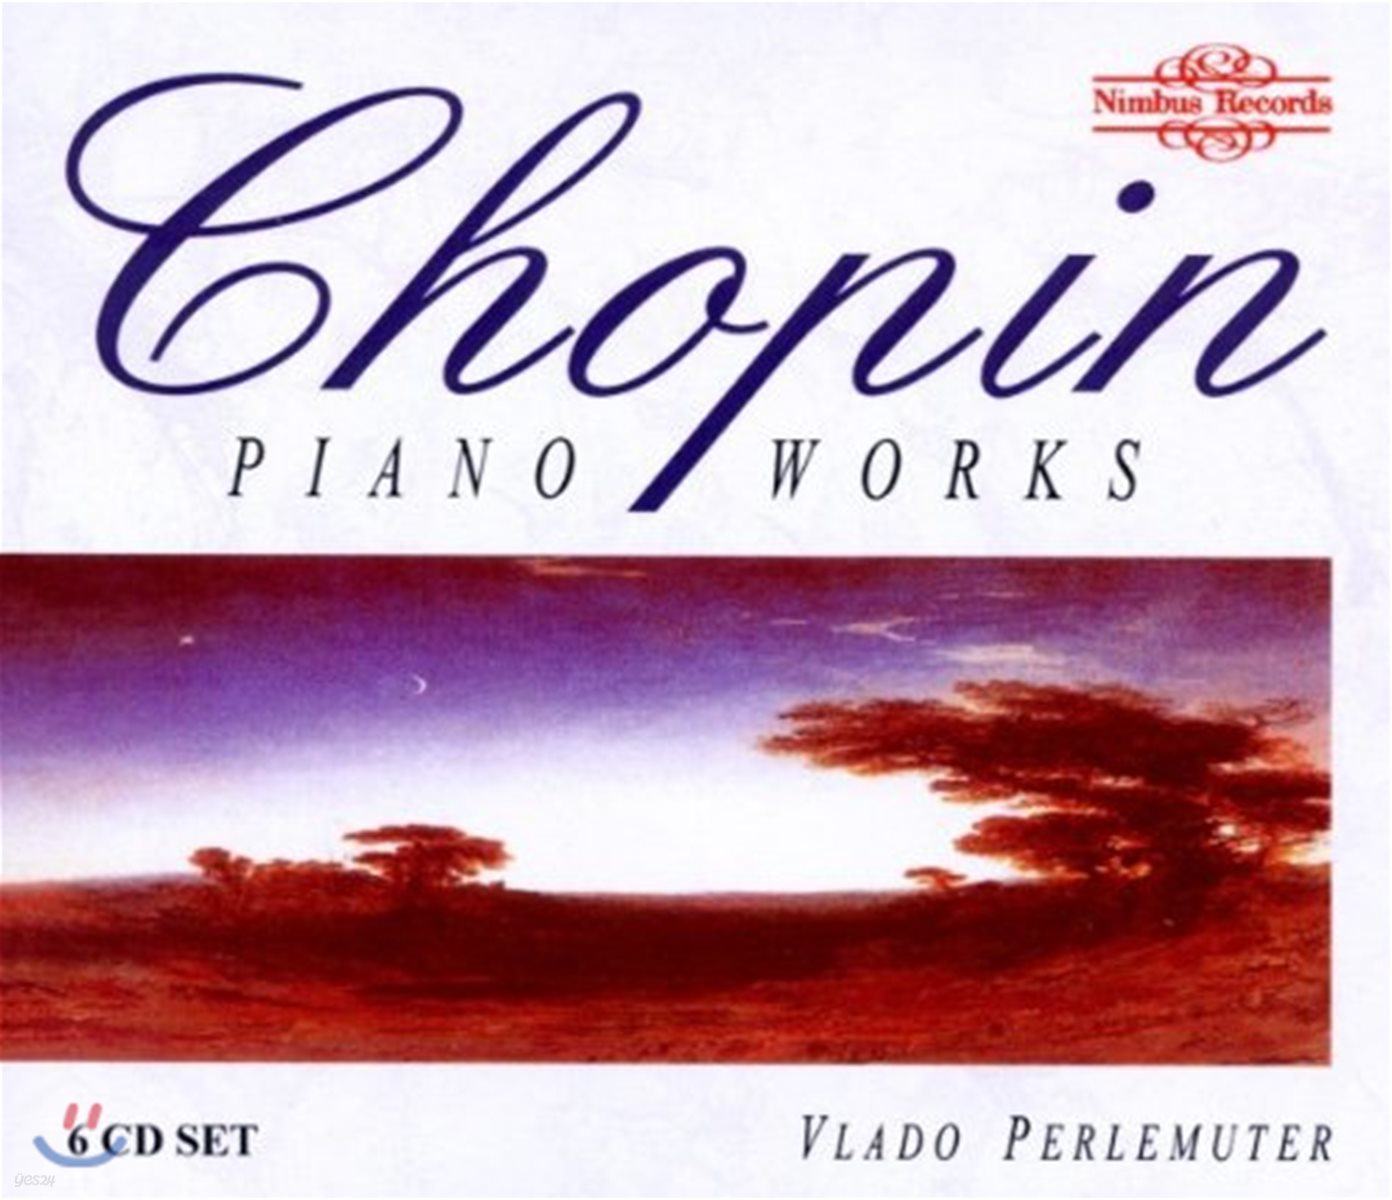 Vlado Perlemuter 쇼팽: 피아노 작품집 - 소나타 2번, 3번, 발라드, 마주르카 외 (Chopin: Piano Works) 블라도 페를뮈테르